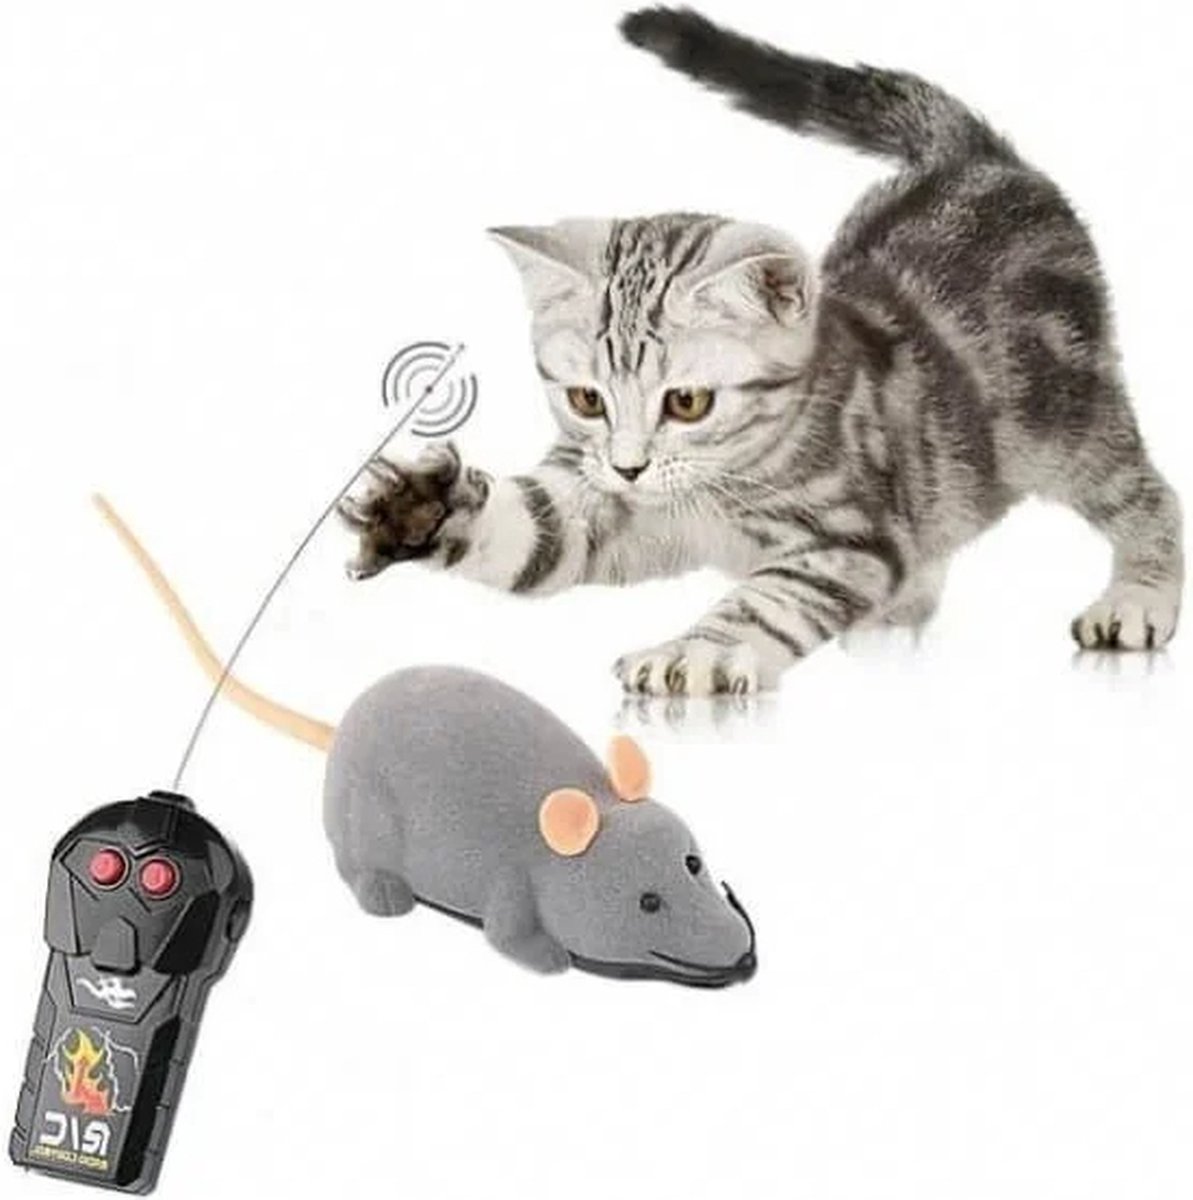 Robocat muis grijs oplaadbaar/beweegt, katten speeltjes